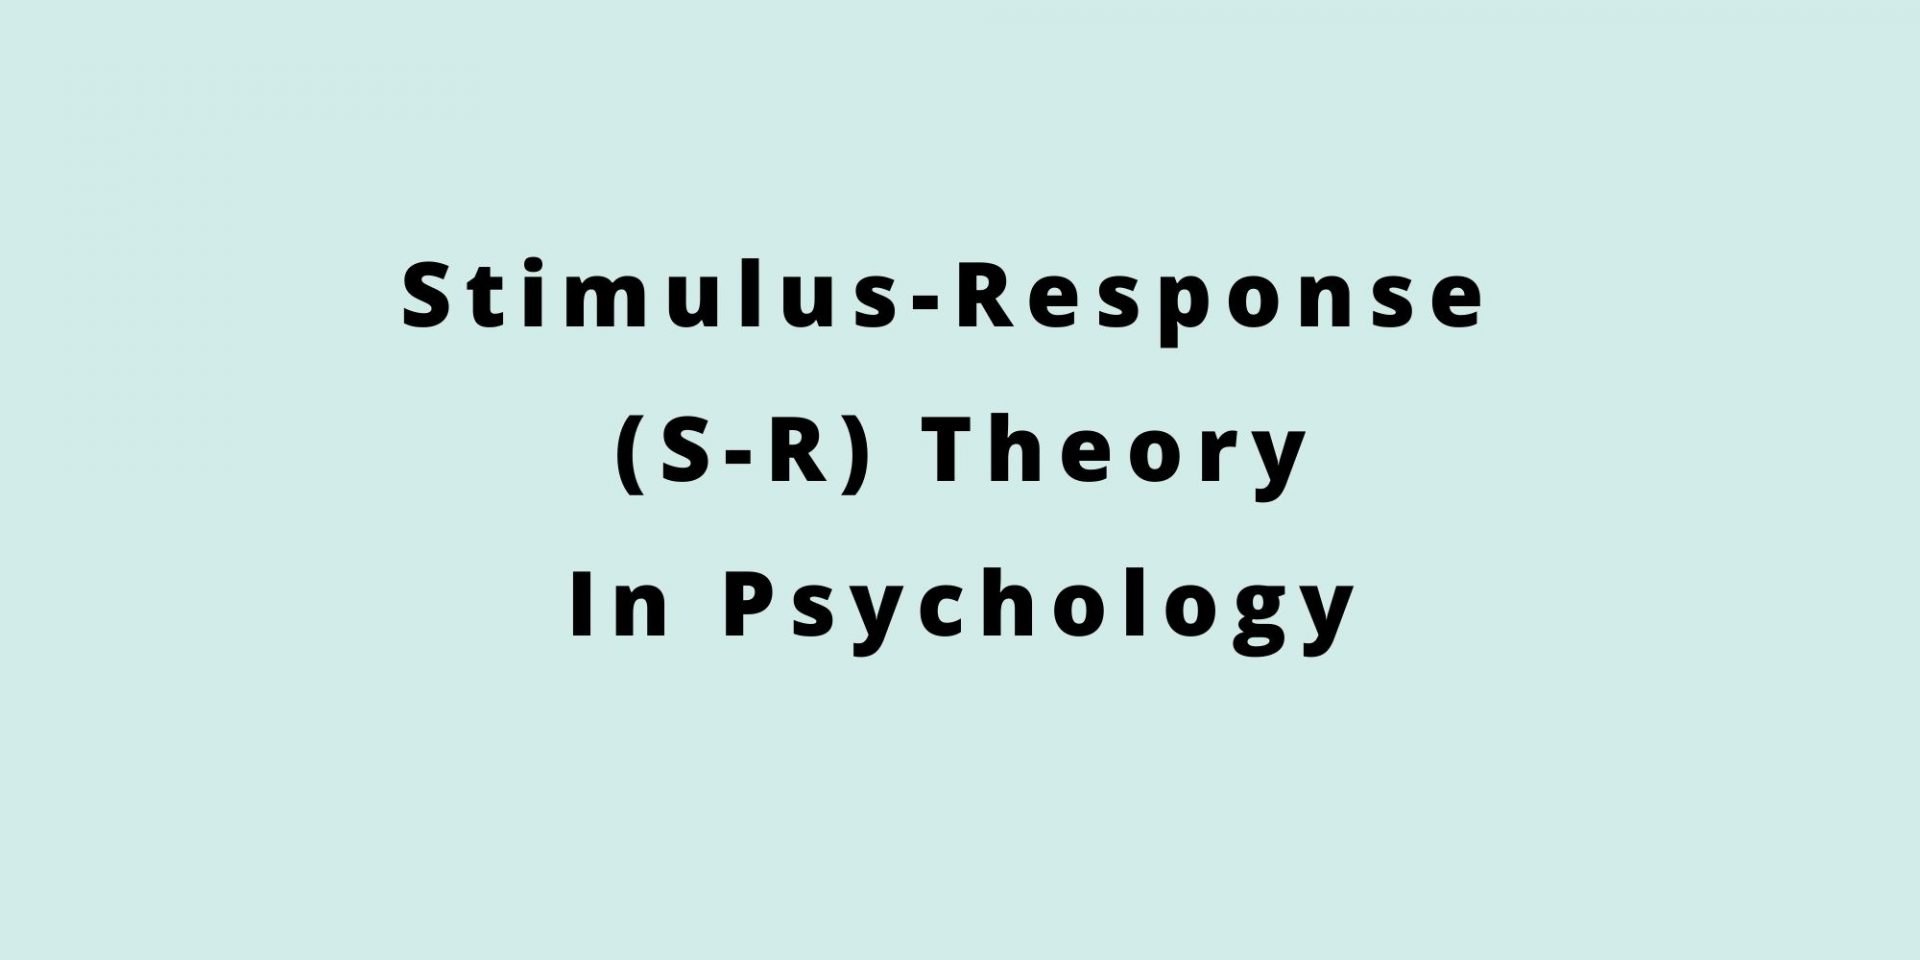 ¿Qué es la teoría estímulo-respuesta en psicología? Hecho simple